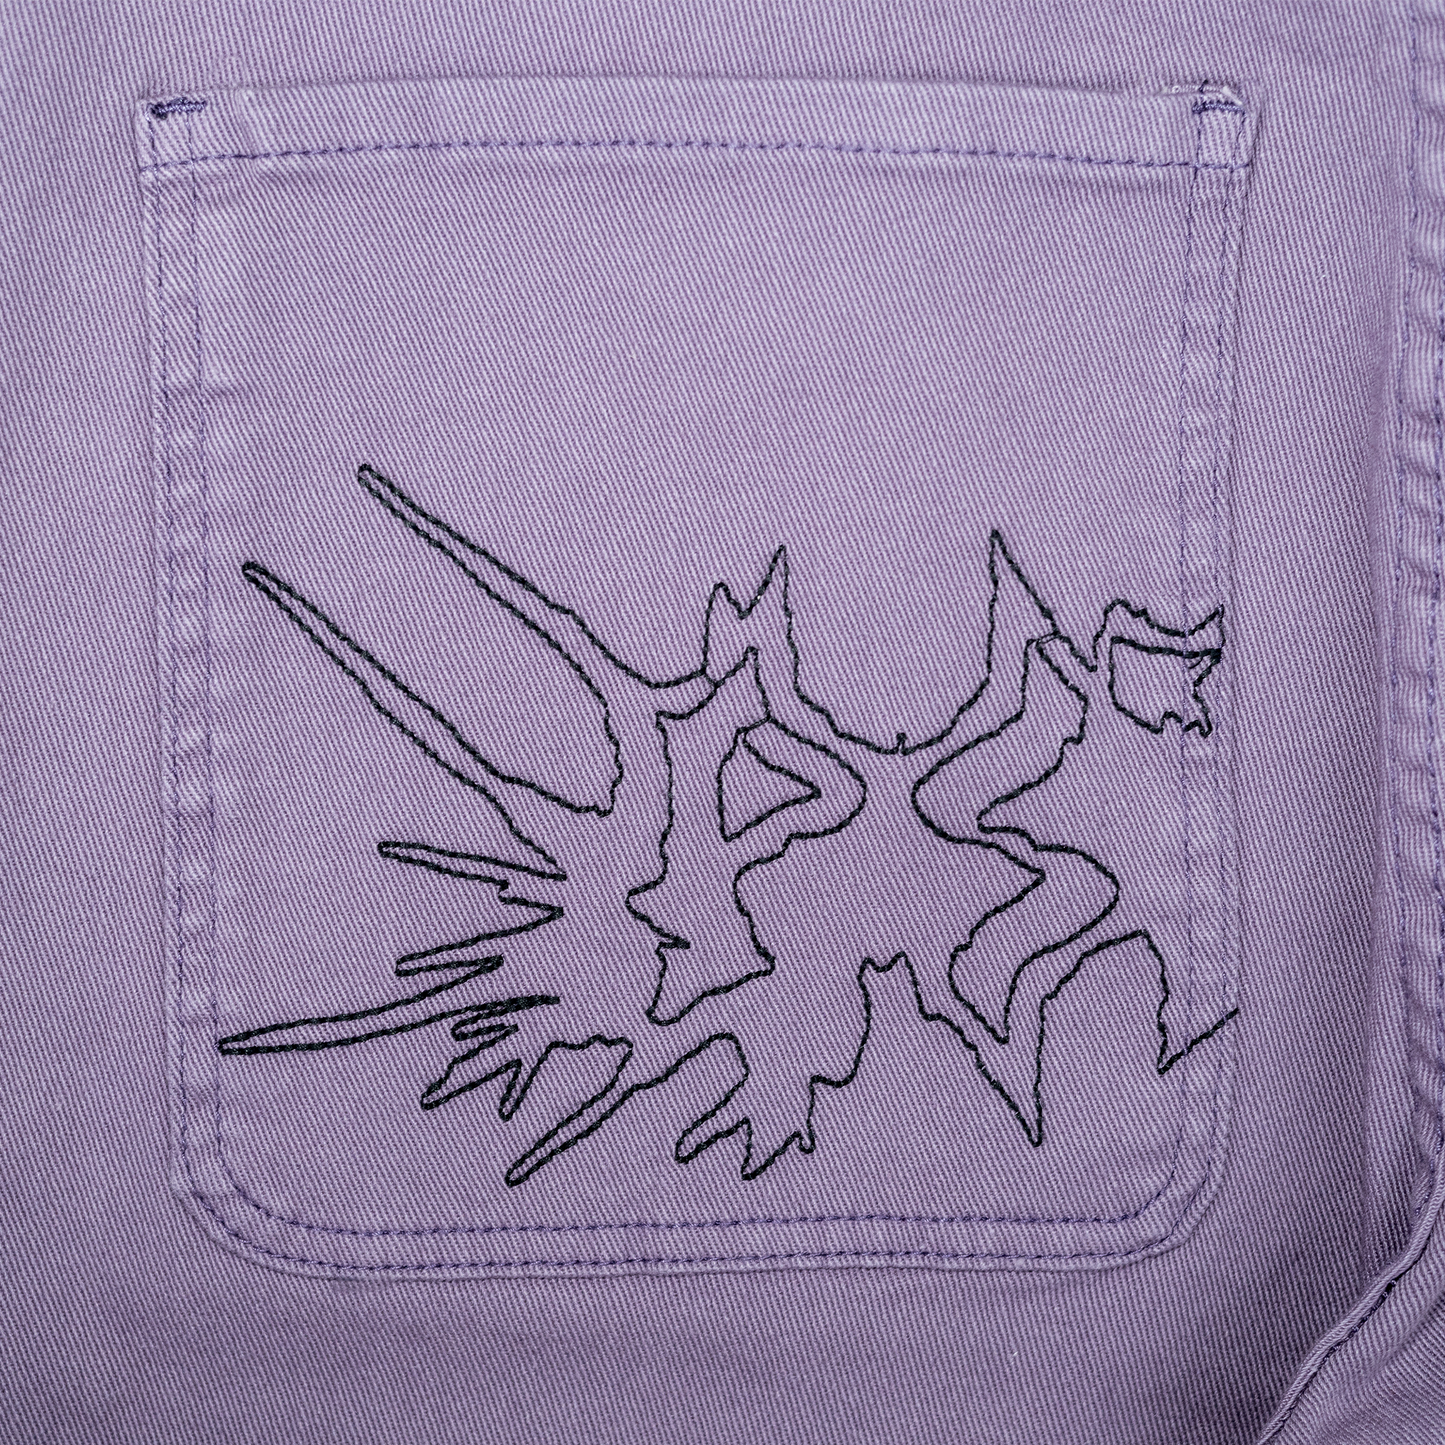 Fat Logo Jeans Purple